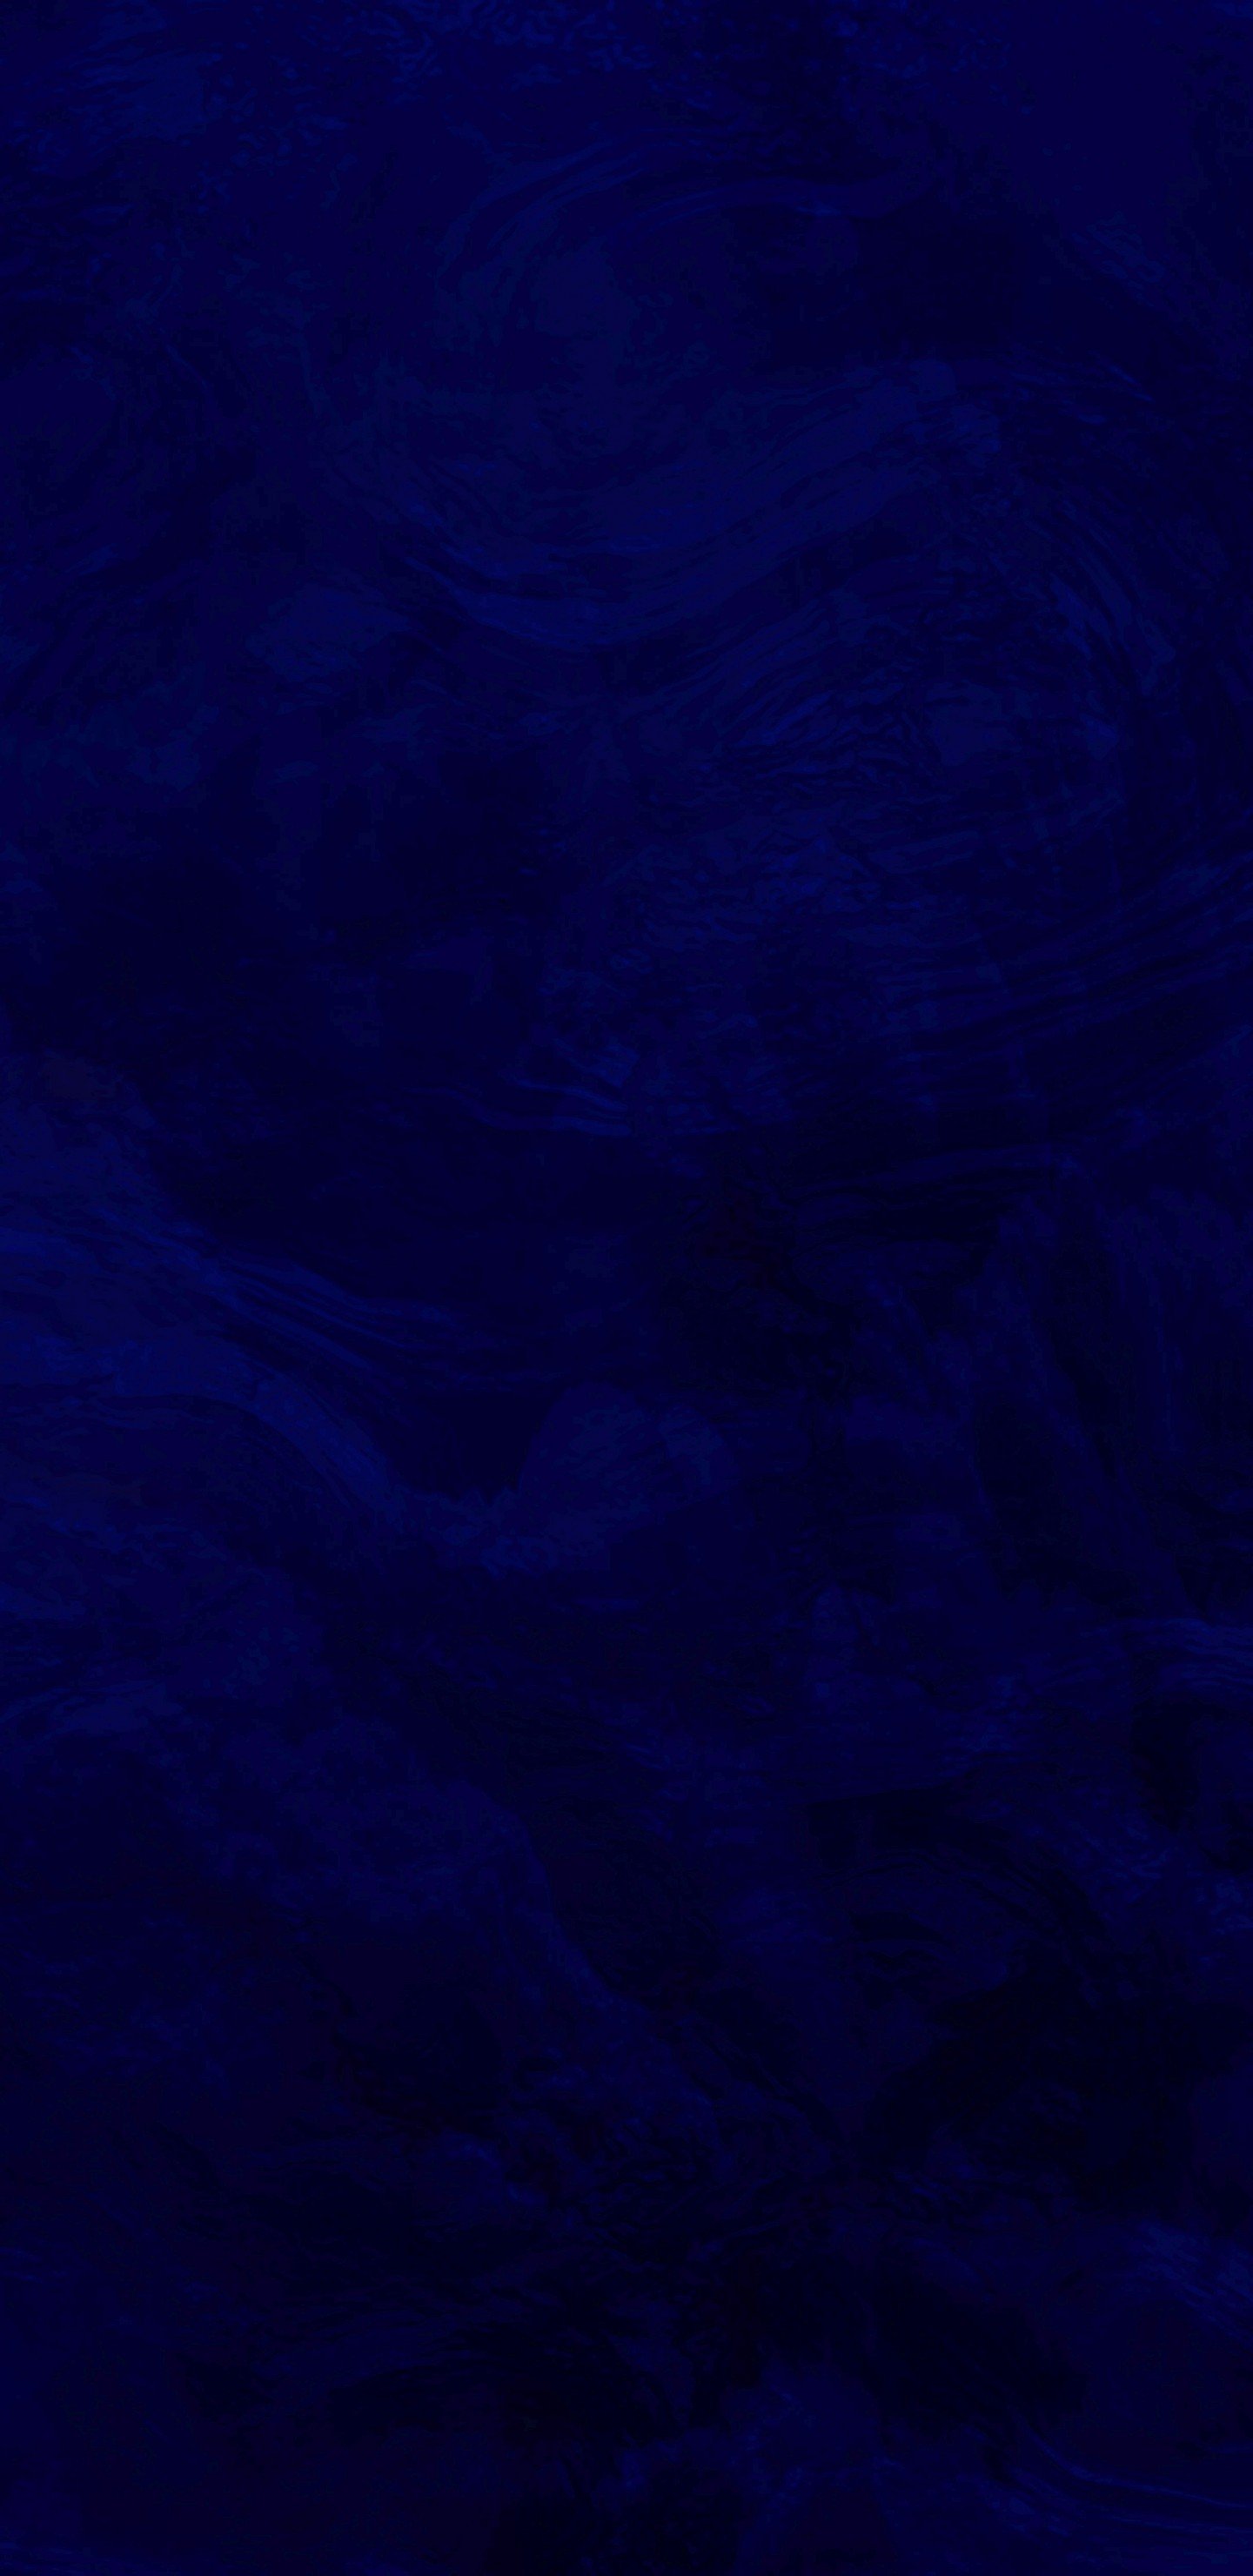 Blue Background, Dark, Texture